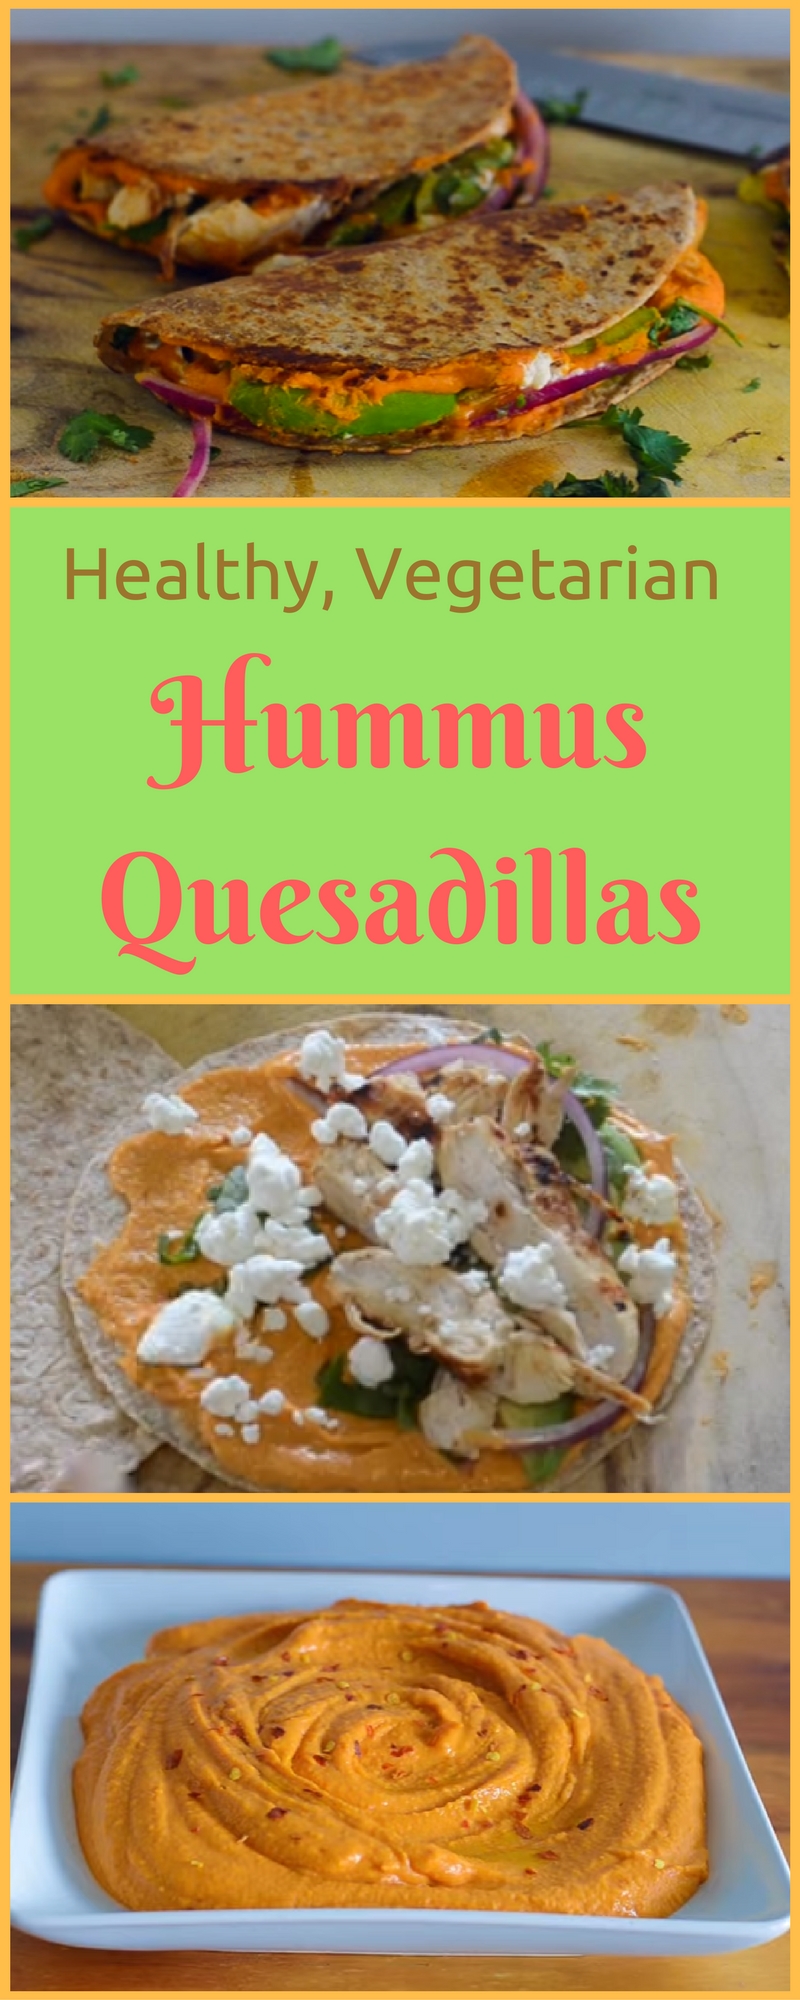 Healthy Hummus Quesadillas